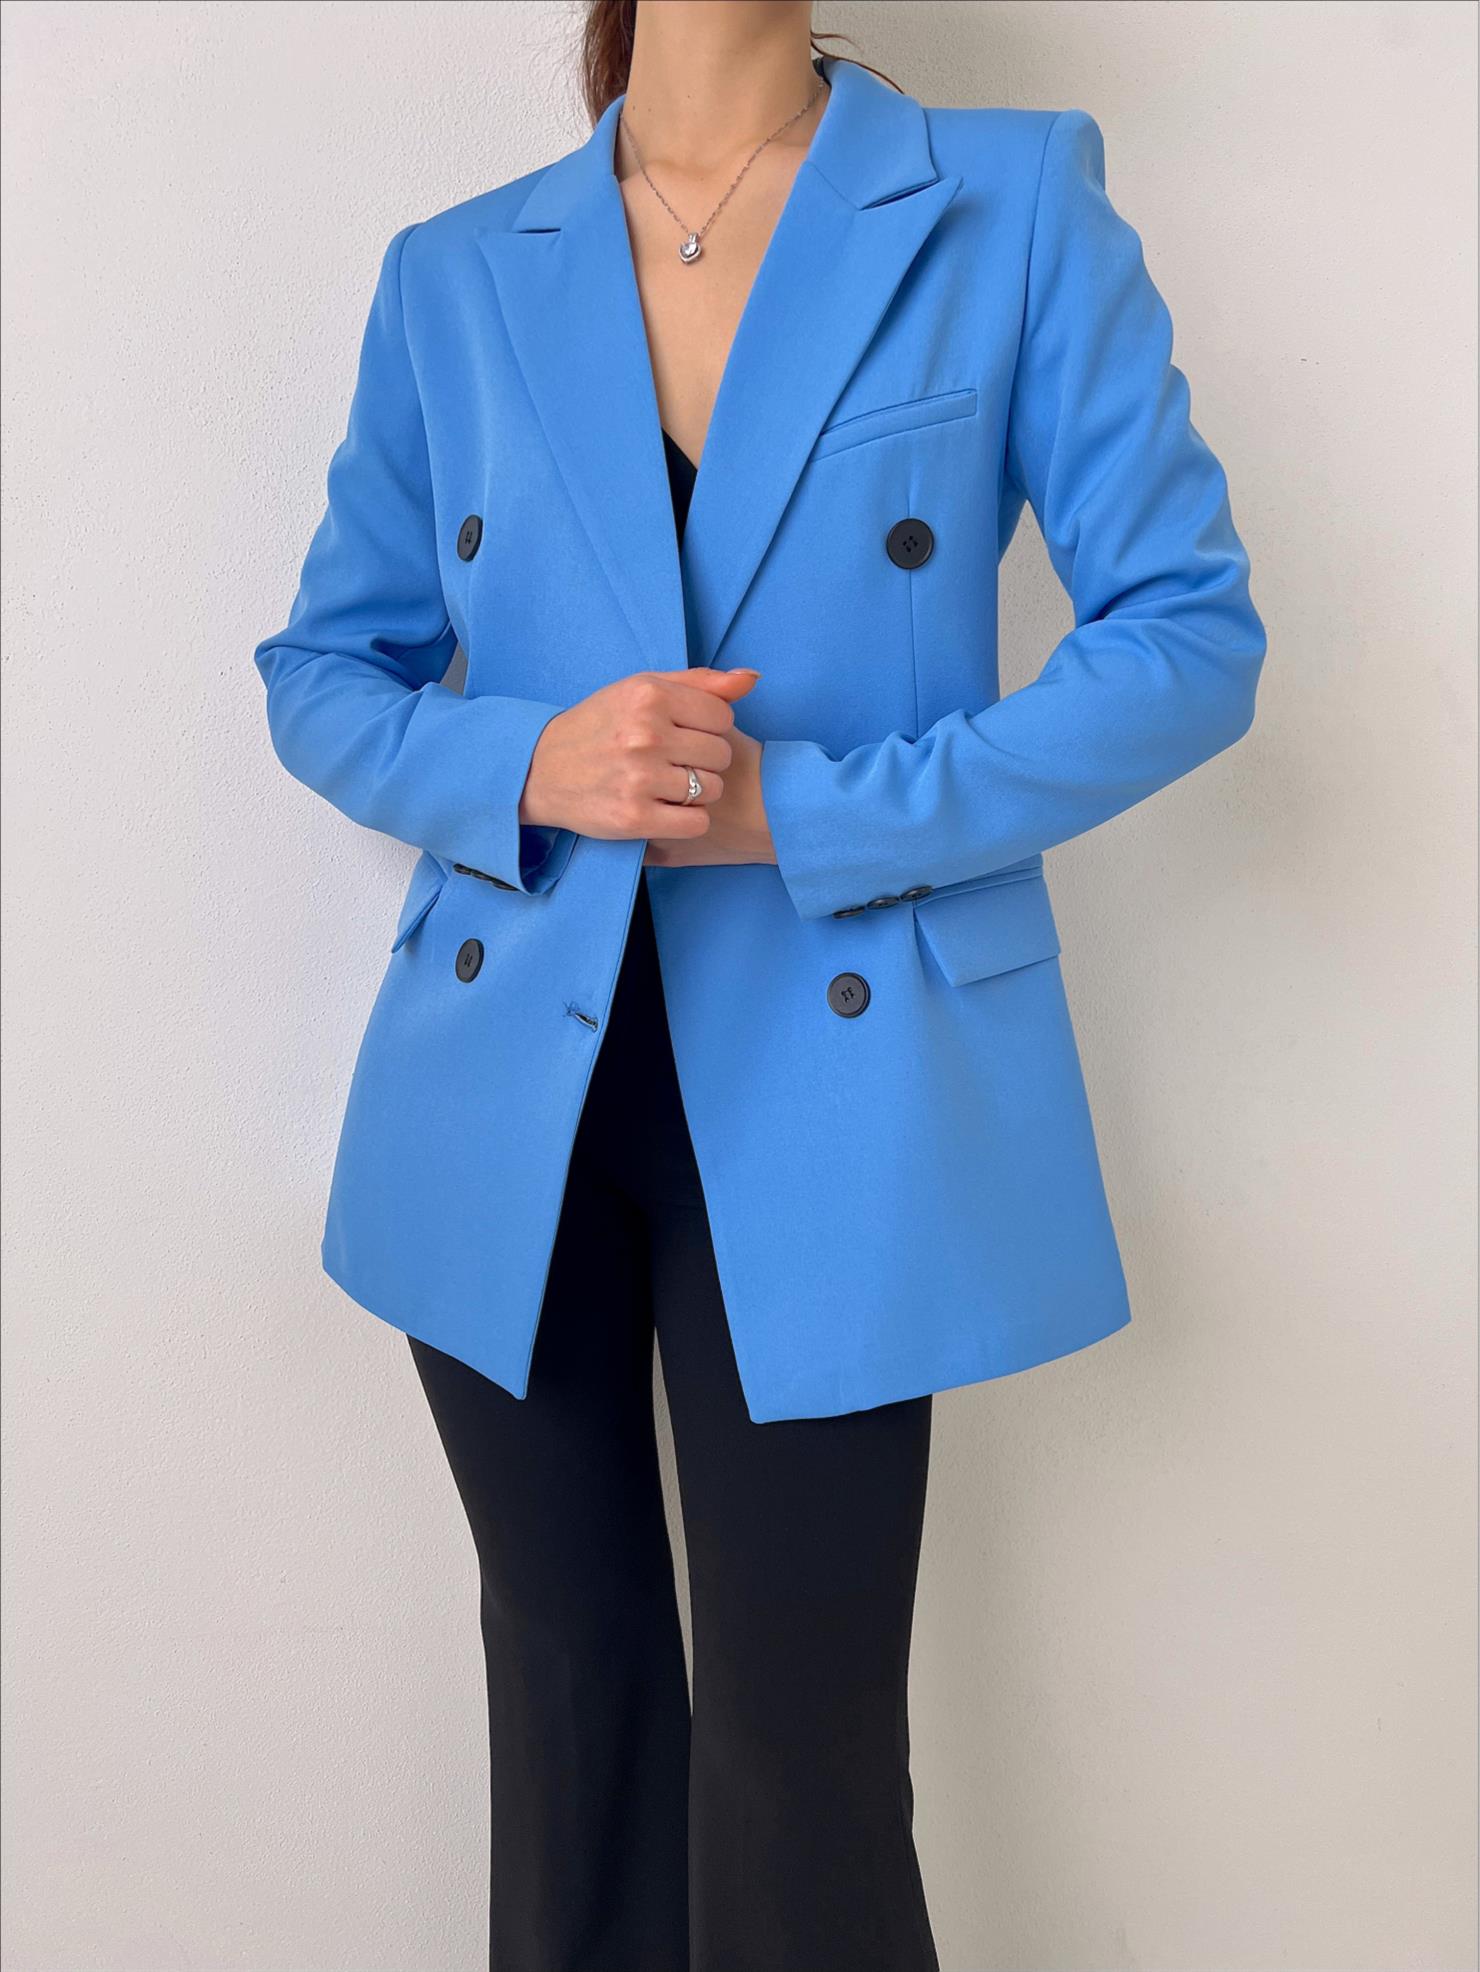 Çift Düğme Kapamalı Kruvaze Yaka Callie Kadın Mavi Blazer Ceket 23Y000019